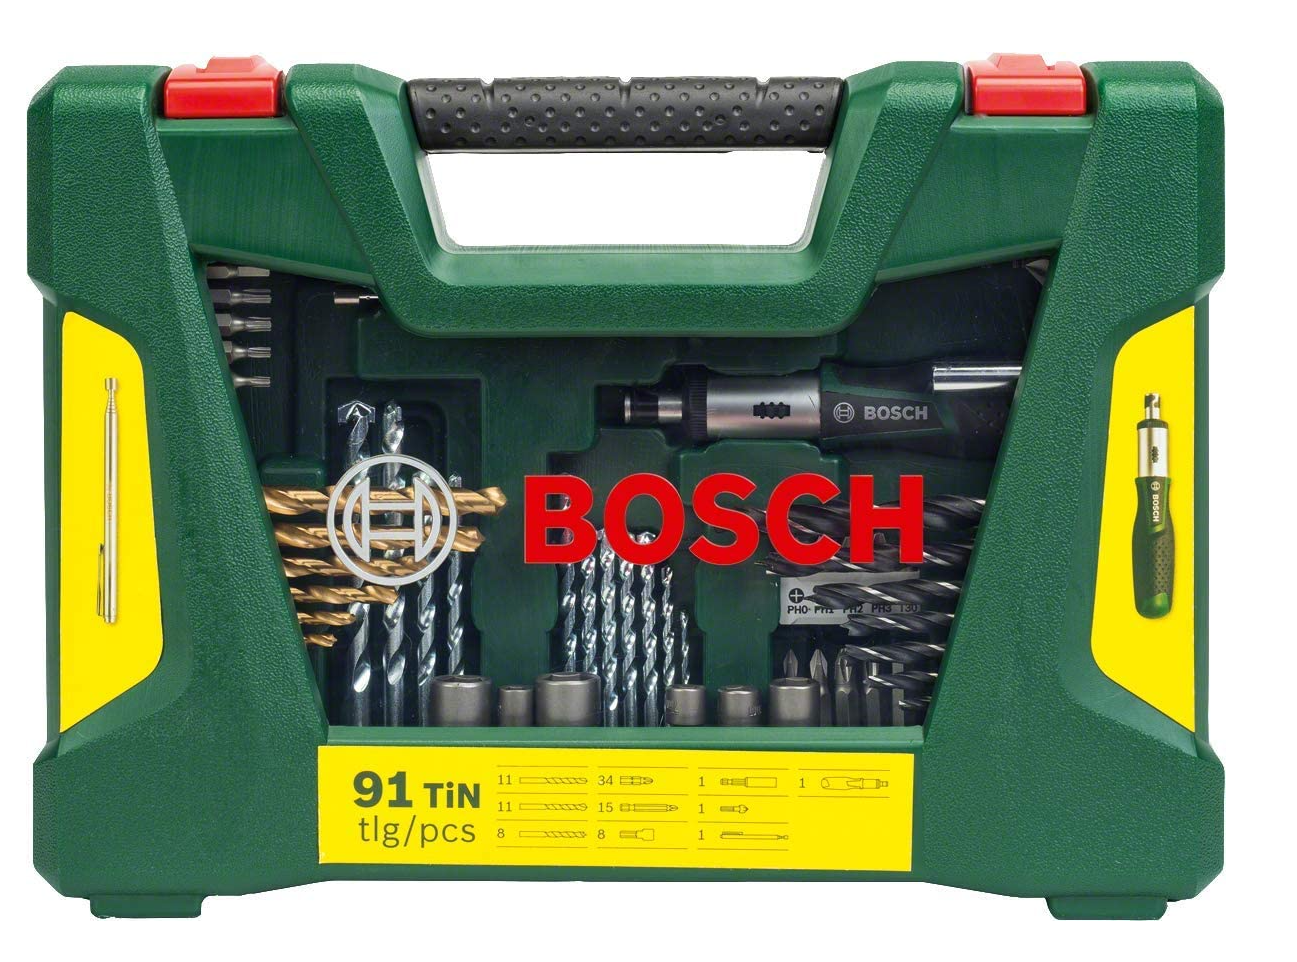 Bosch 91-teiliges Titanium-Bohrer- und Bit Set V-Line für nur 28,79€ bei Prime-Versand